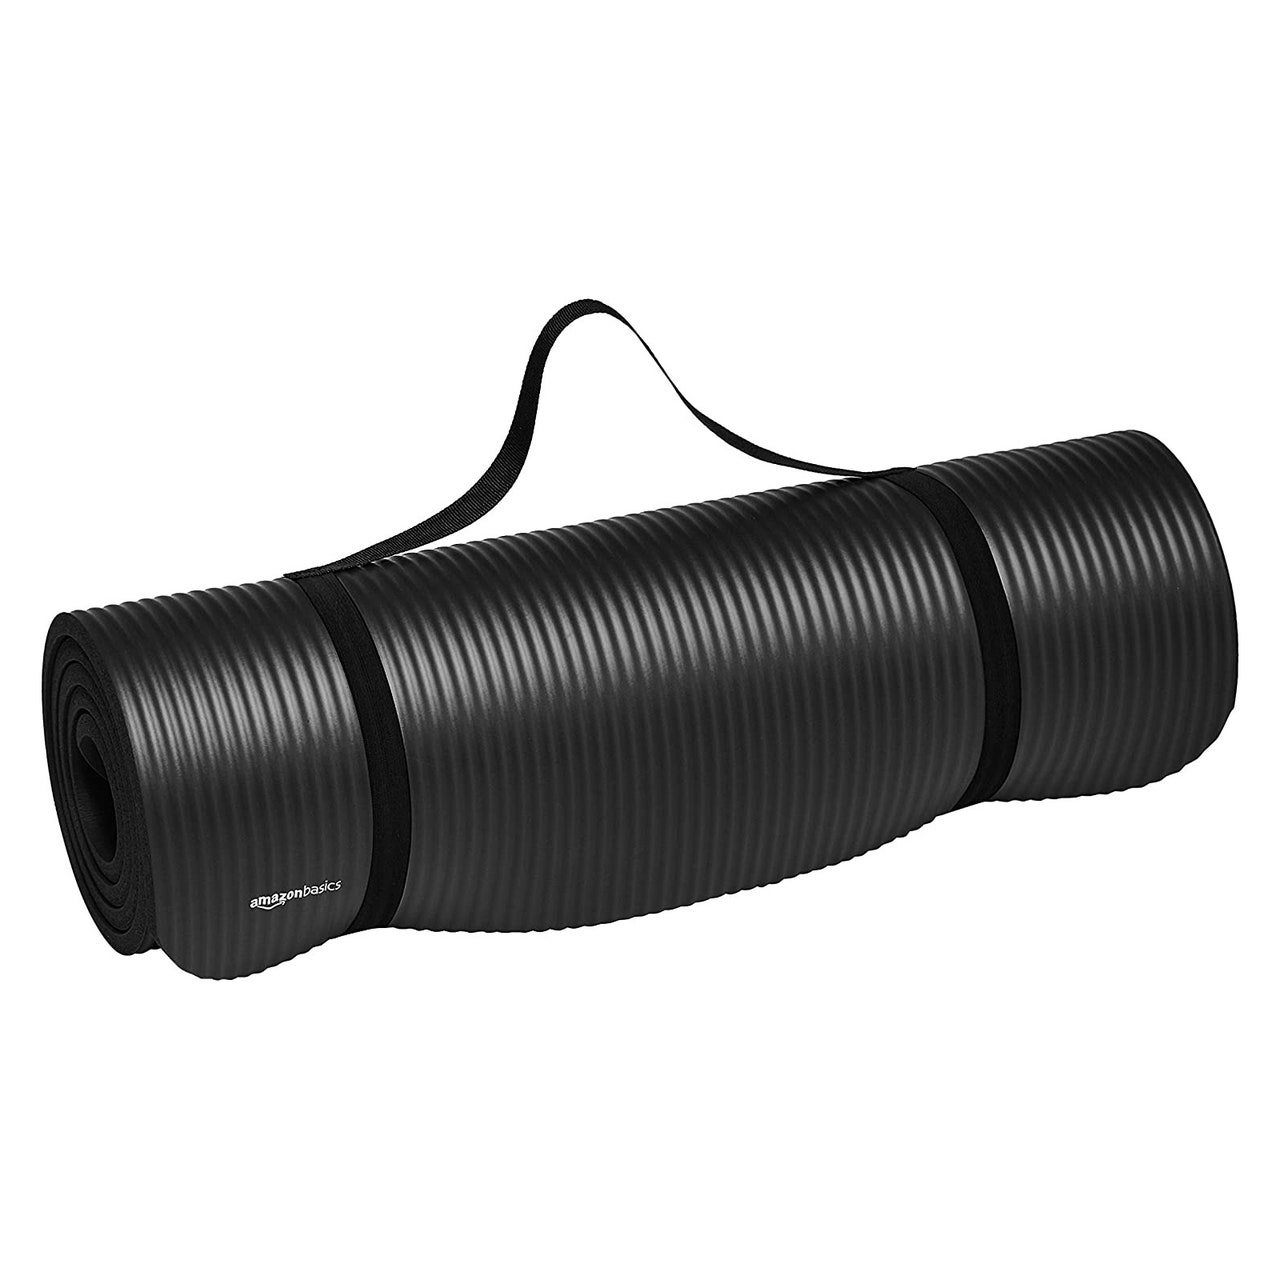 Amazon Basics Extra dicke Übungs-Yogamatte, aufgerollt, schwarze Yogamatte auf weißem Hintergrund